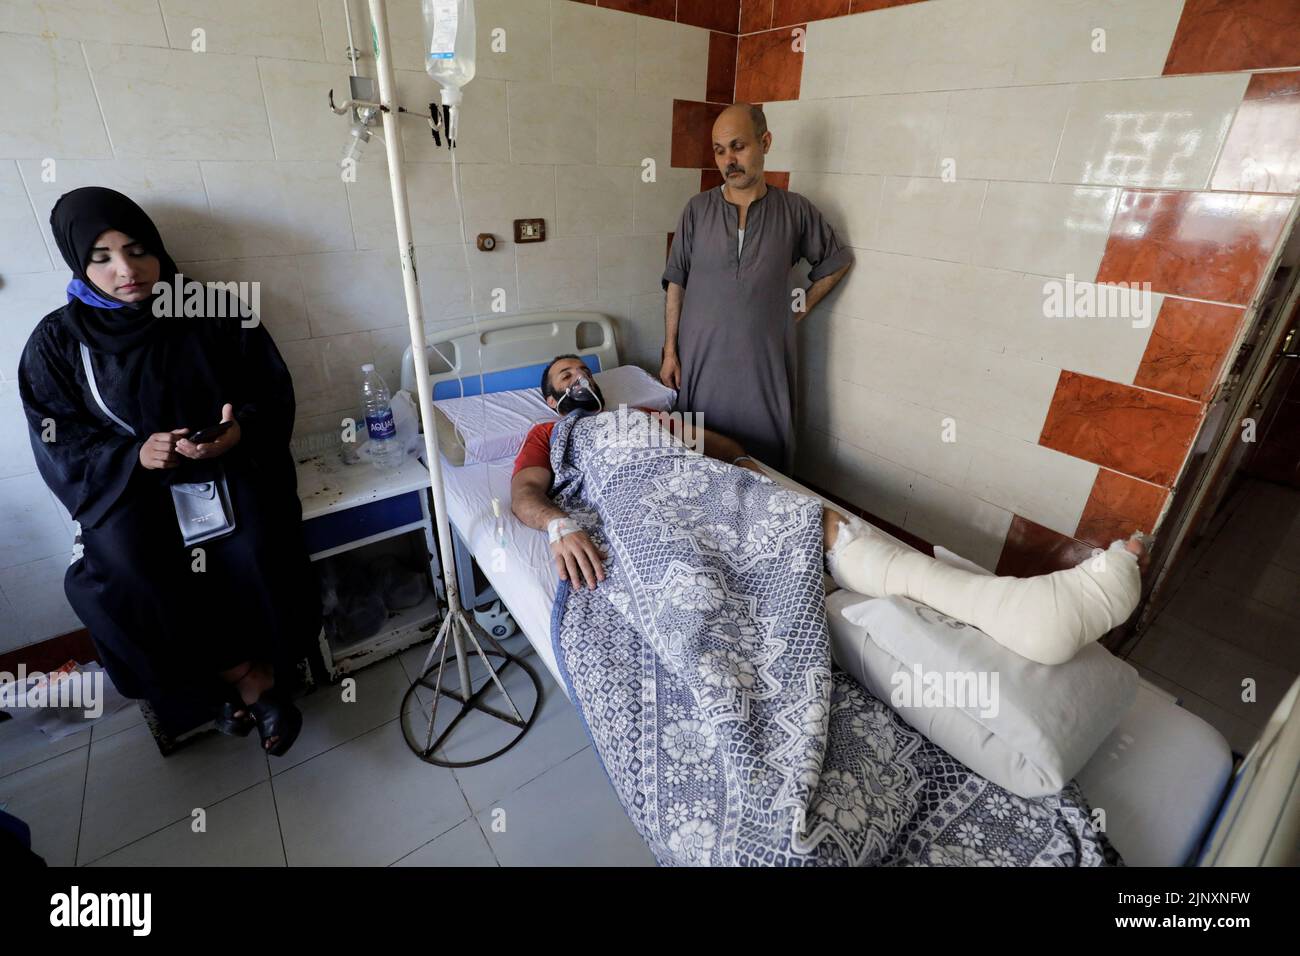 Una víctima del incendio mortal que estalló en la iglesia de Abu Sifin recibe tratamiento médico en un hospital de Giza, Egipto, el 14 de agosto de 2022. REUTERS/Mohamed Abd El Ghany Foto de stock